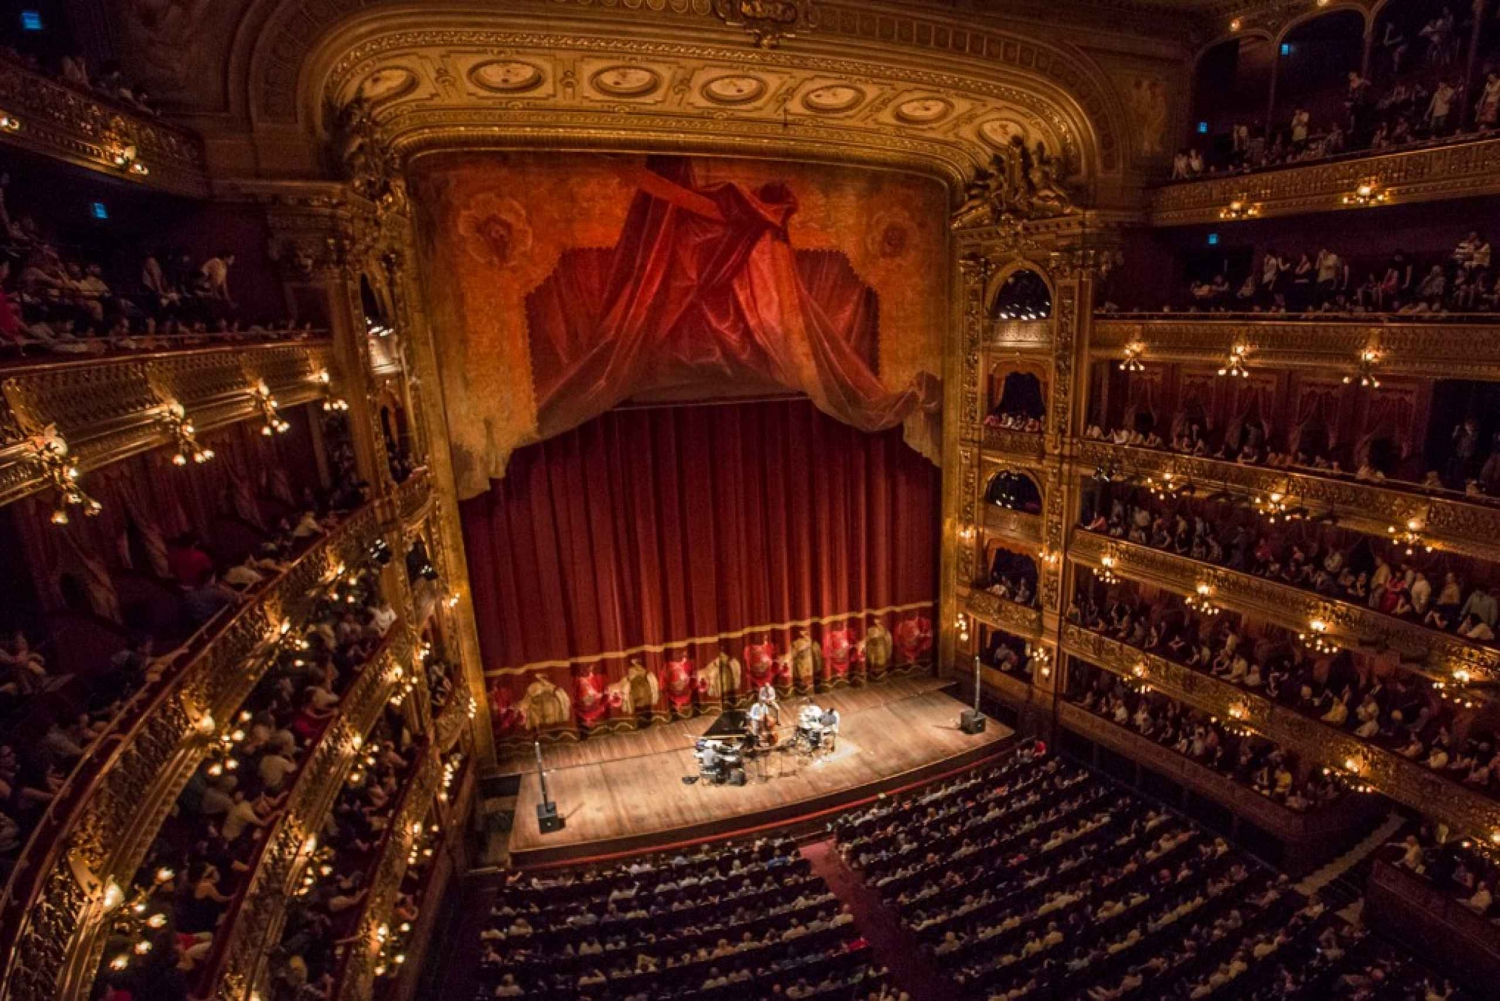 Buenos Aires: Visita guiada ao Teatro Colon